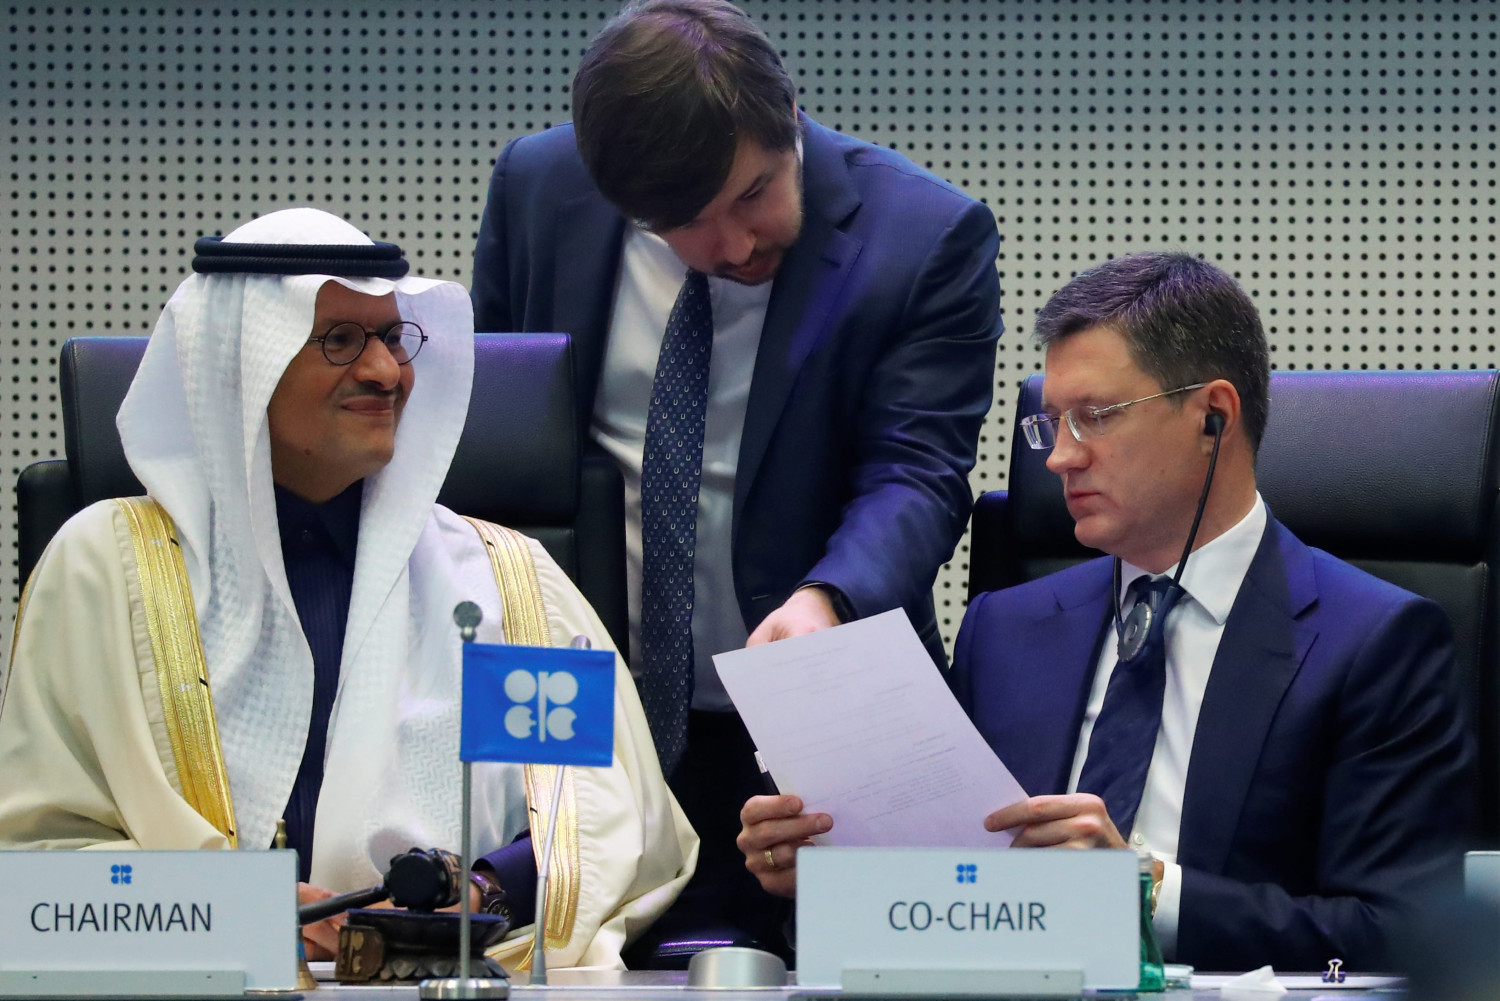 Saudijski ministar energetike princ Abdulaziz bin Salman al Saud i ruski ministar energetike Aleksander Novak na sastanku u Beču, 06. decembar 2019. (Foto: Reuters/Leonhard Foeger)